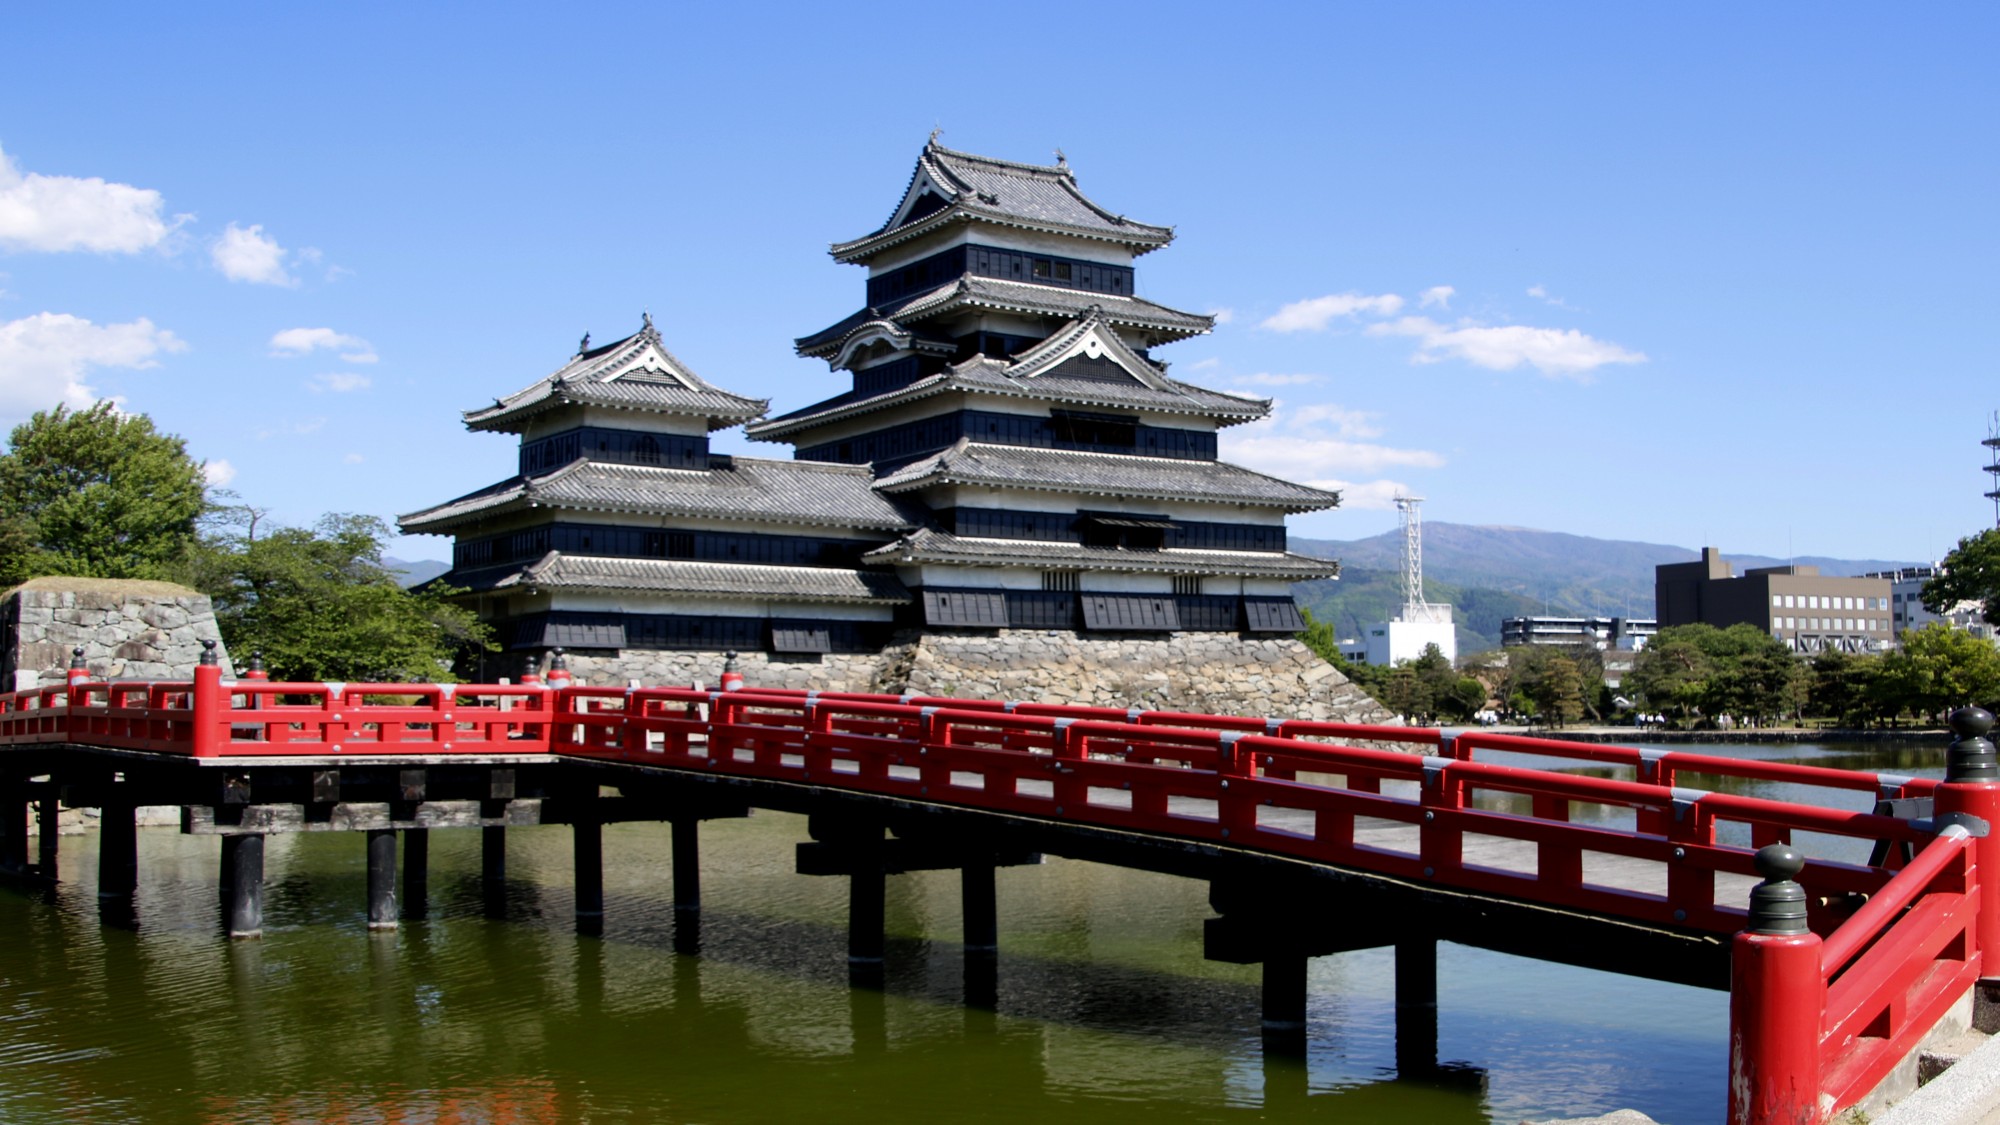 松本城や山岳景勝地「上高地」や安曇野など、信州の観光やビジネスの拠点に最適